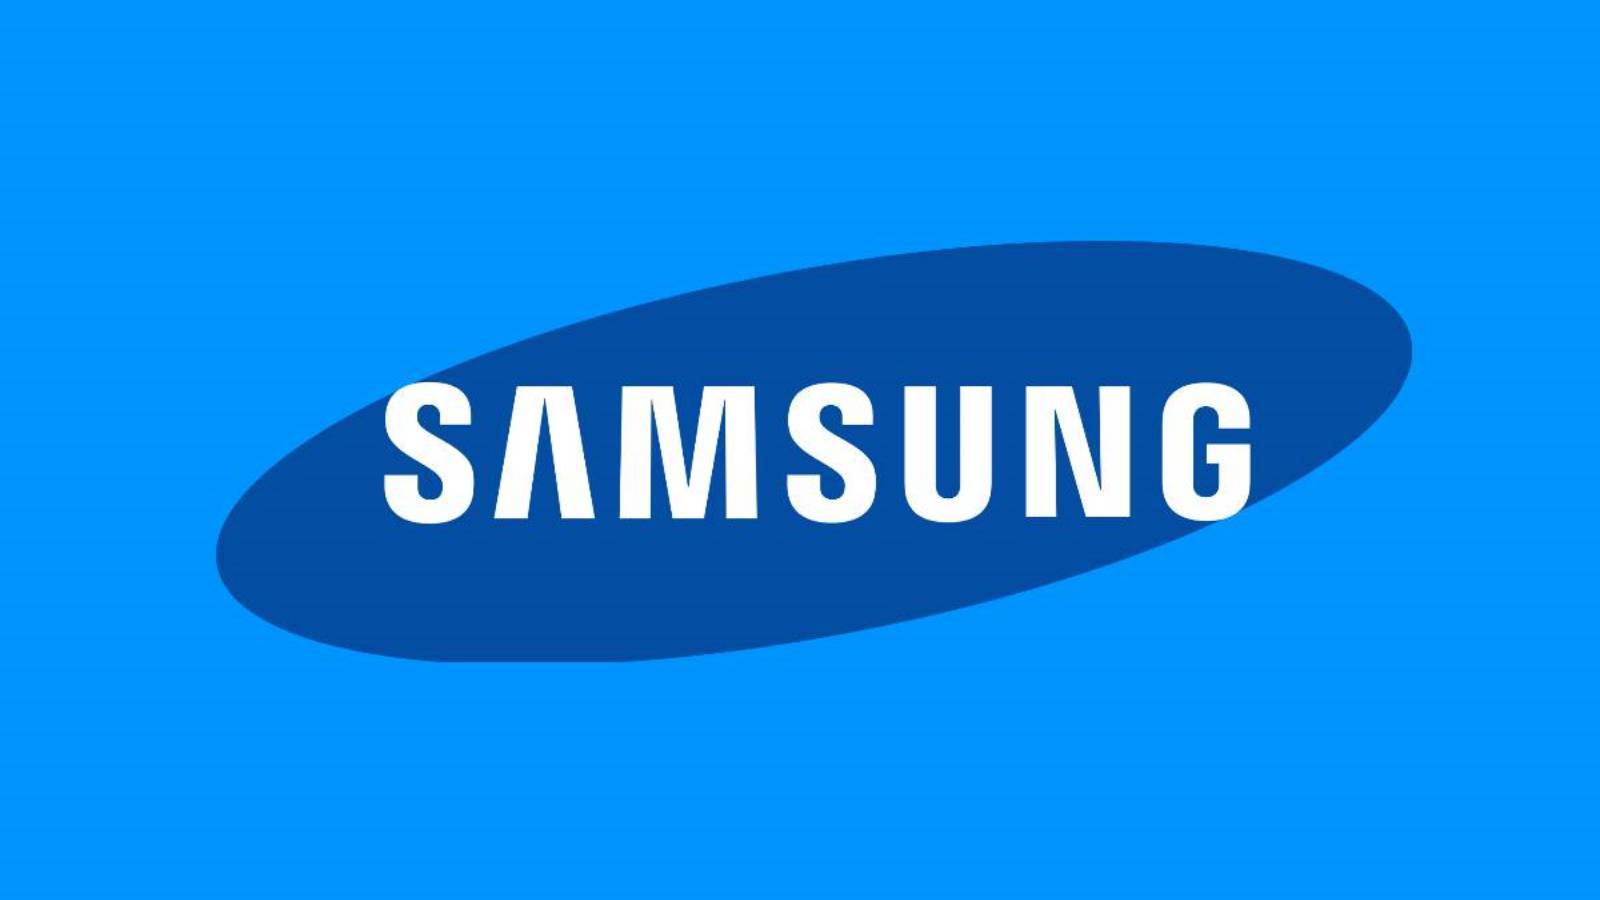 Samsung esittelee uusimmat innovaatiot ilmastointijärjestelmiin